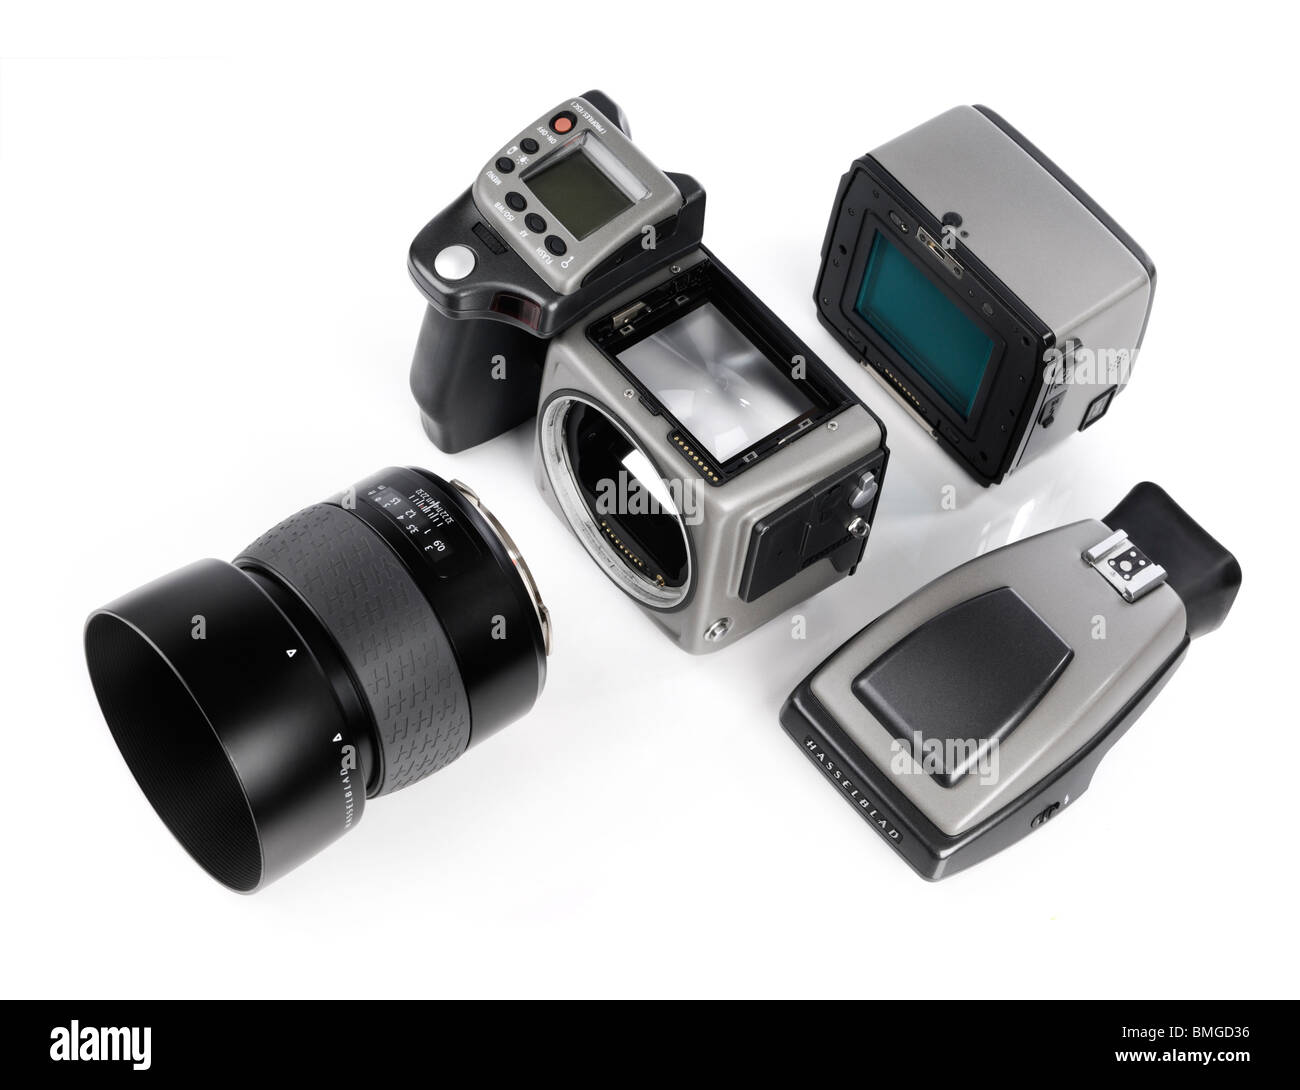 Hasselblad H3DII-39 Medium format Digitalkamera mit Digitalrückteil, Objektiv und Sucher losgelöst vom Kameragehäuse Stockfoto